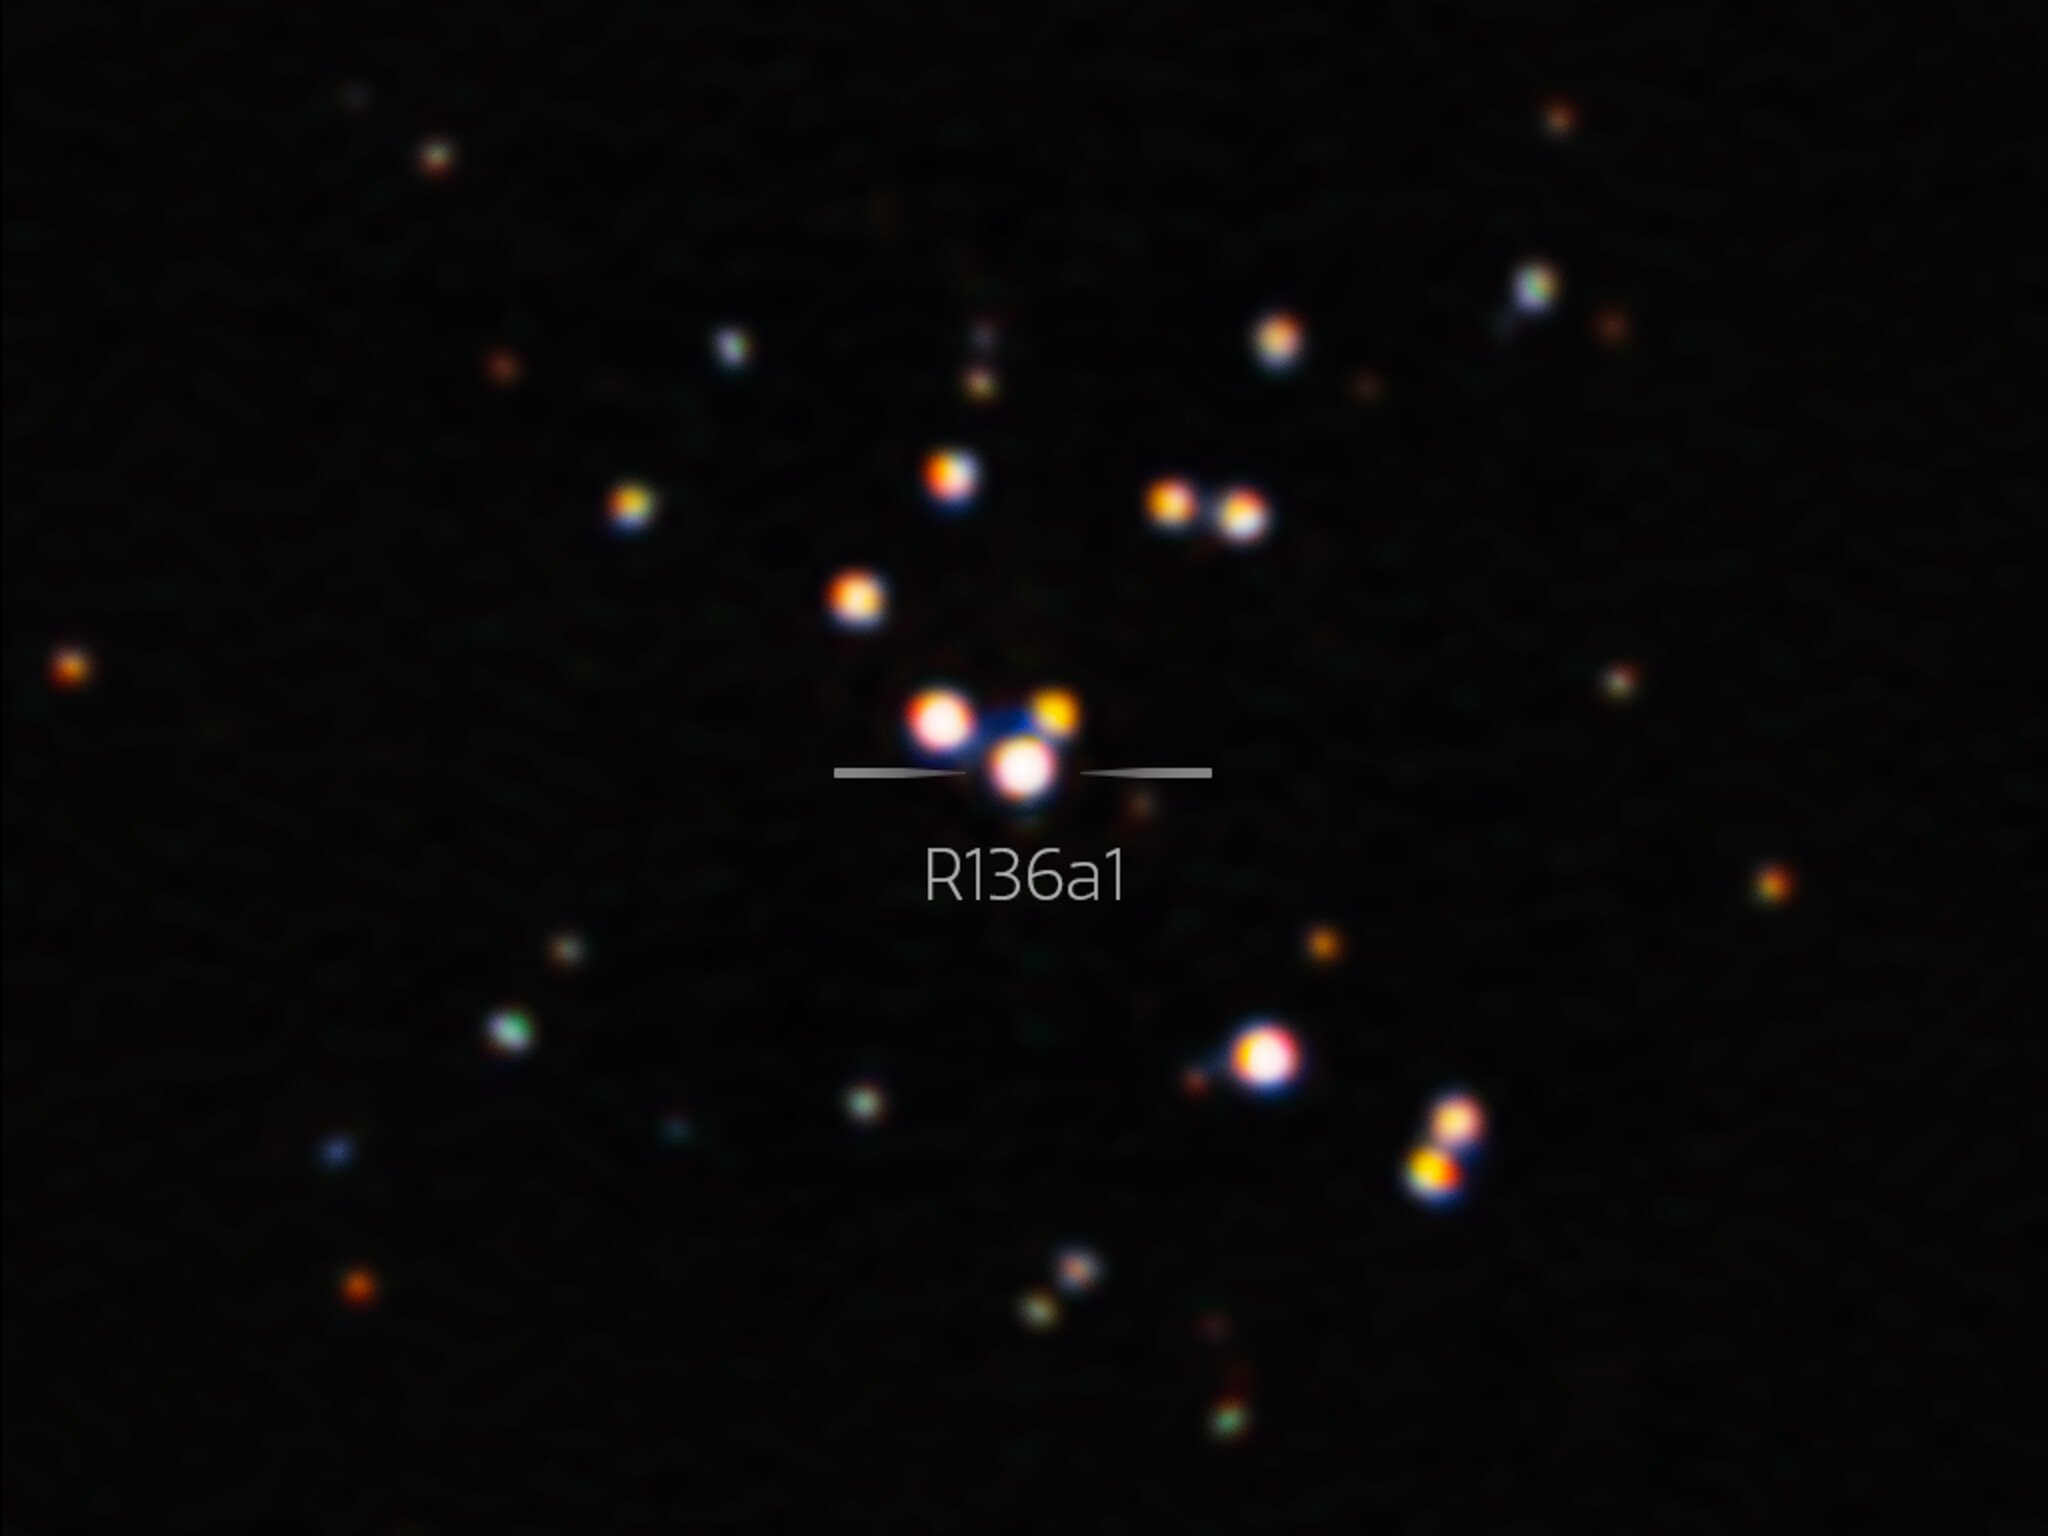 Διάστημα: Άστρο μεγαλύτερο του Ήλιου «βγήκε» φωτογραφία στην καθαρότερη ανάλυση μέχρι σήμερα